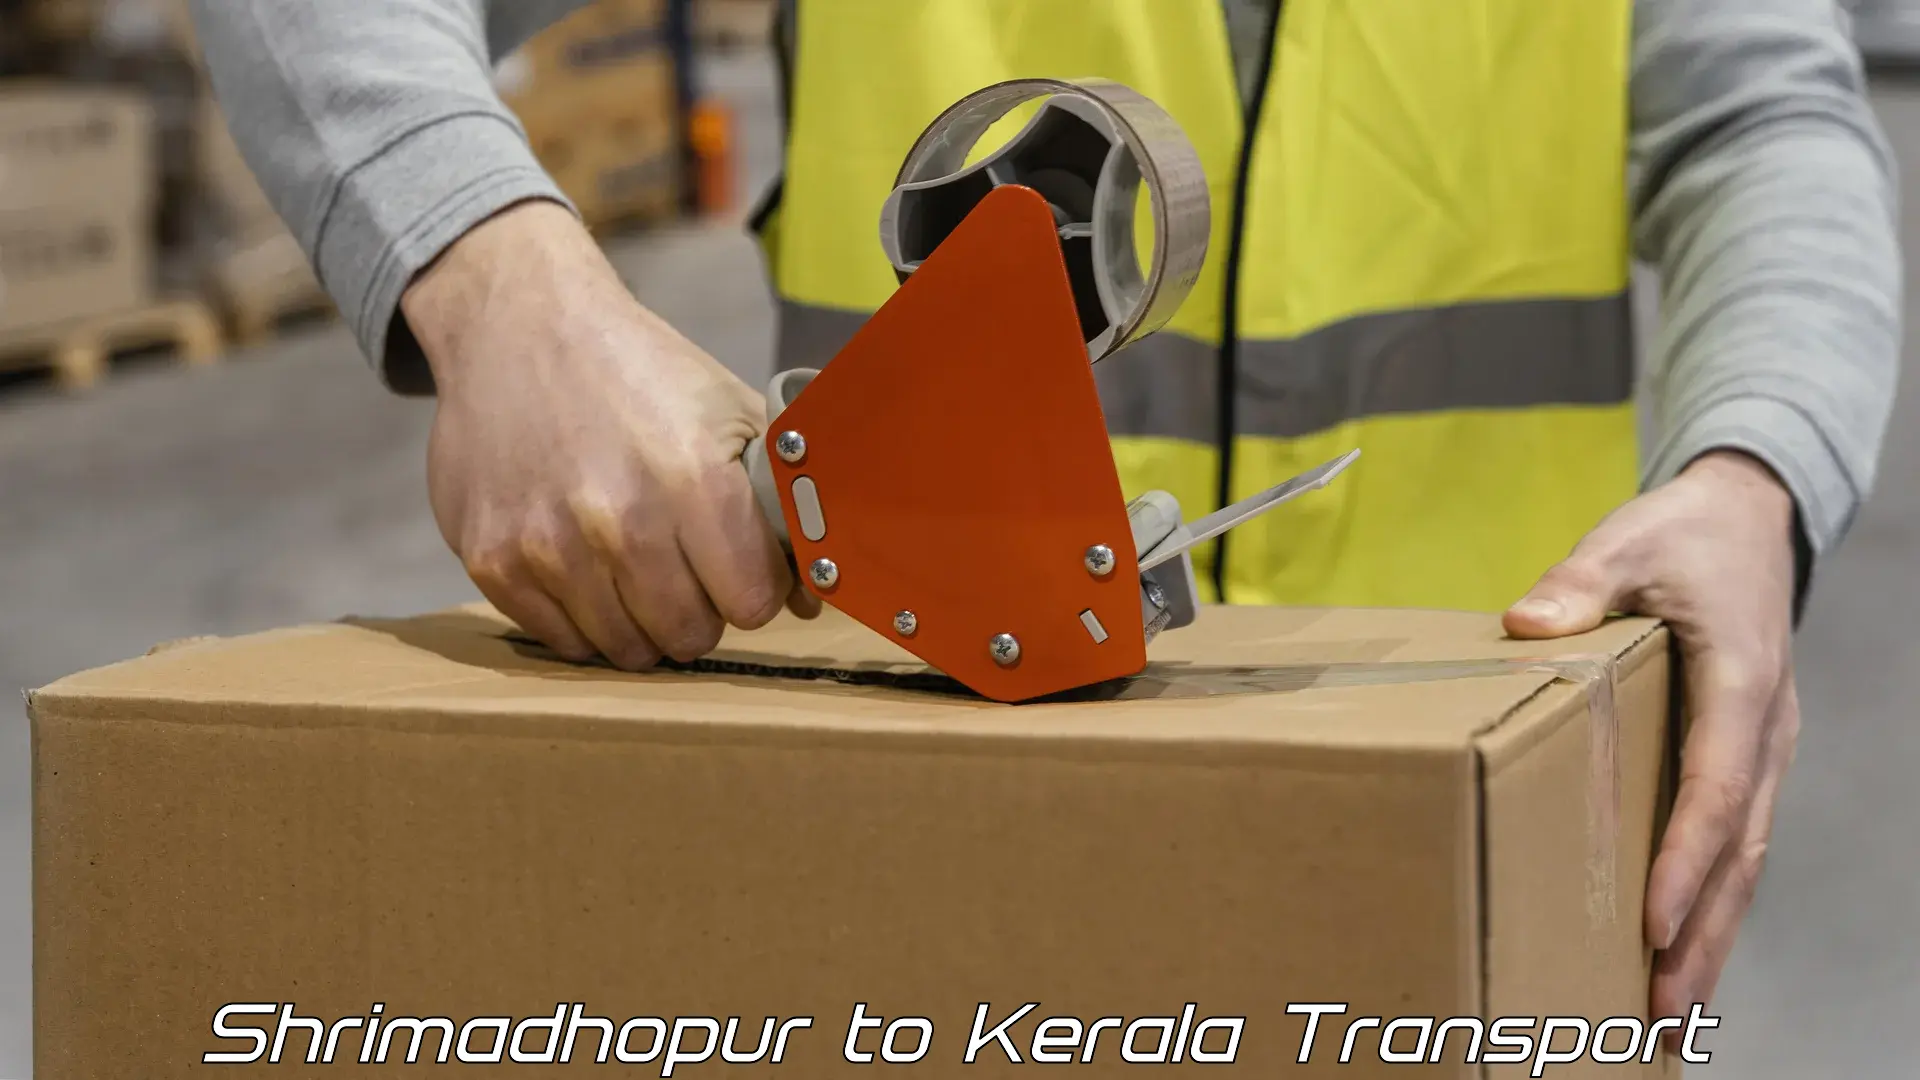 Container transportation services Shrimadhopur to Kothamangalam